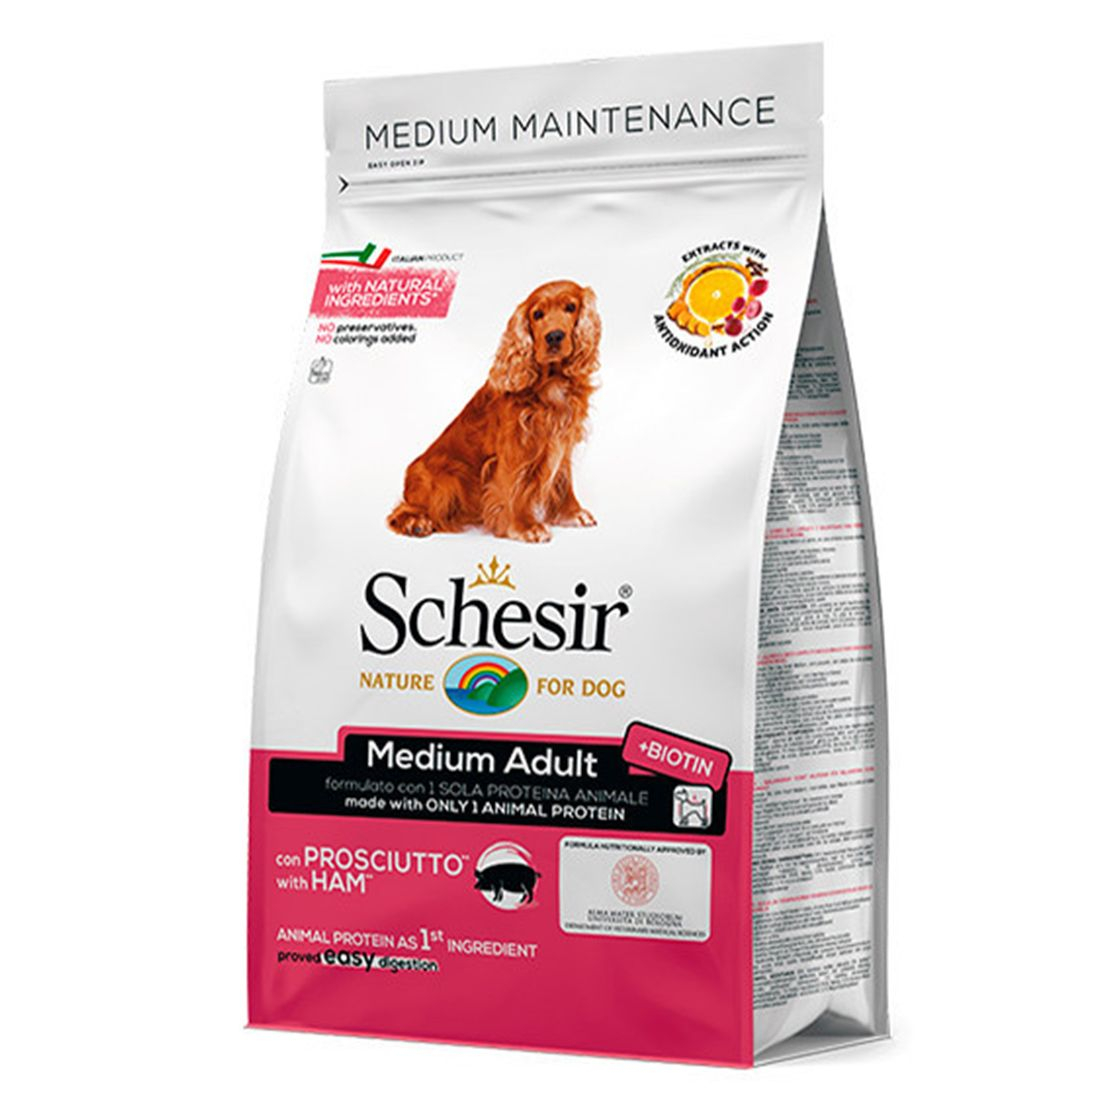 SCHESIR DOG Medium Adult Maintenance ham, 3kg